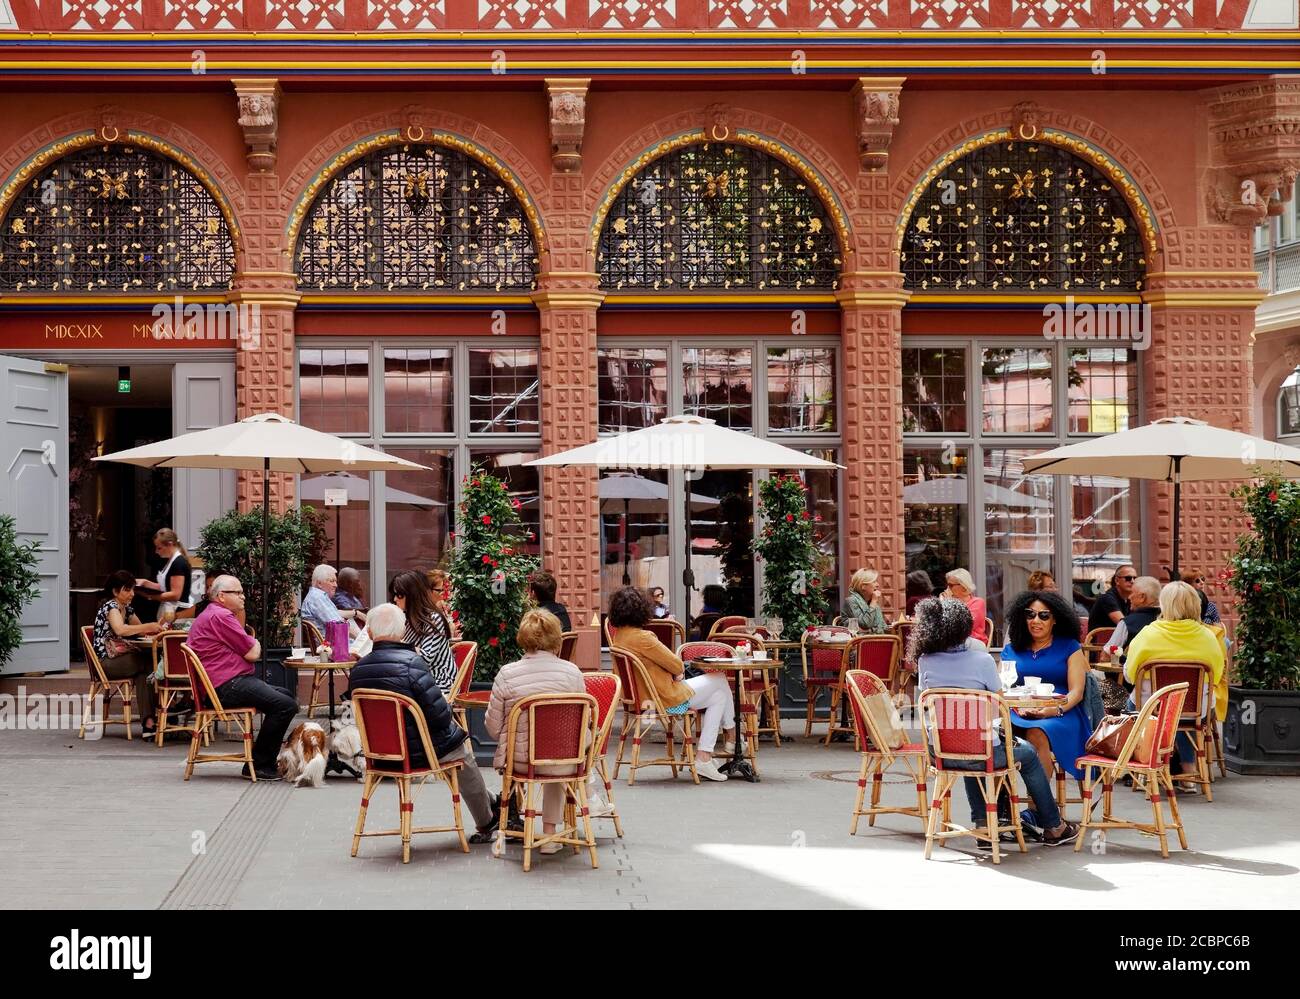 Les gens dans la gastronomie de plein air en face de la maison de café Goldene Waage, Nouvelle vieille ville, Francfort-sur-le-main, Hesse, Allemagne Banque D'Images